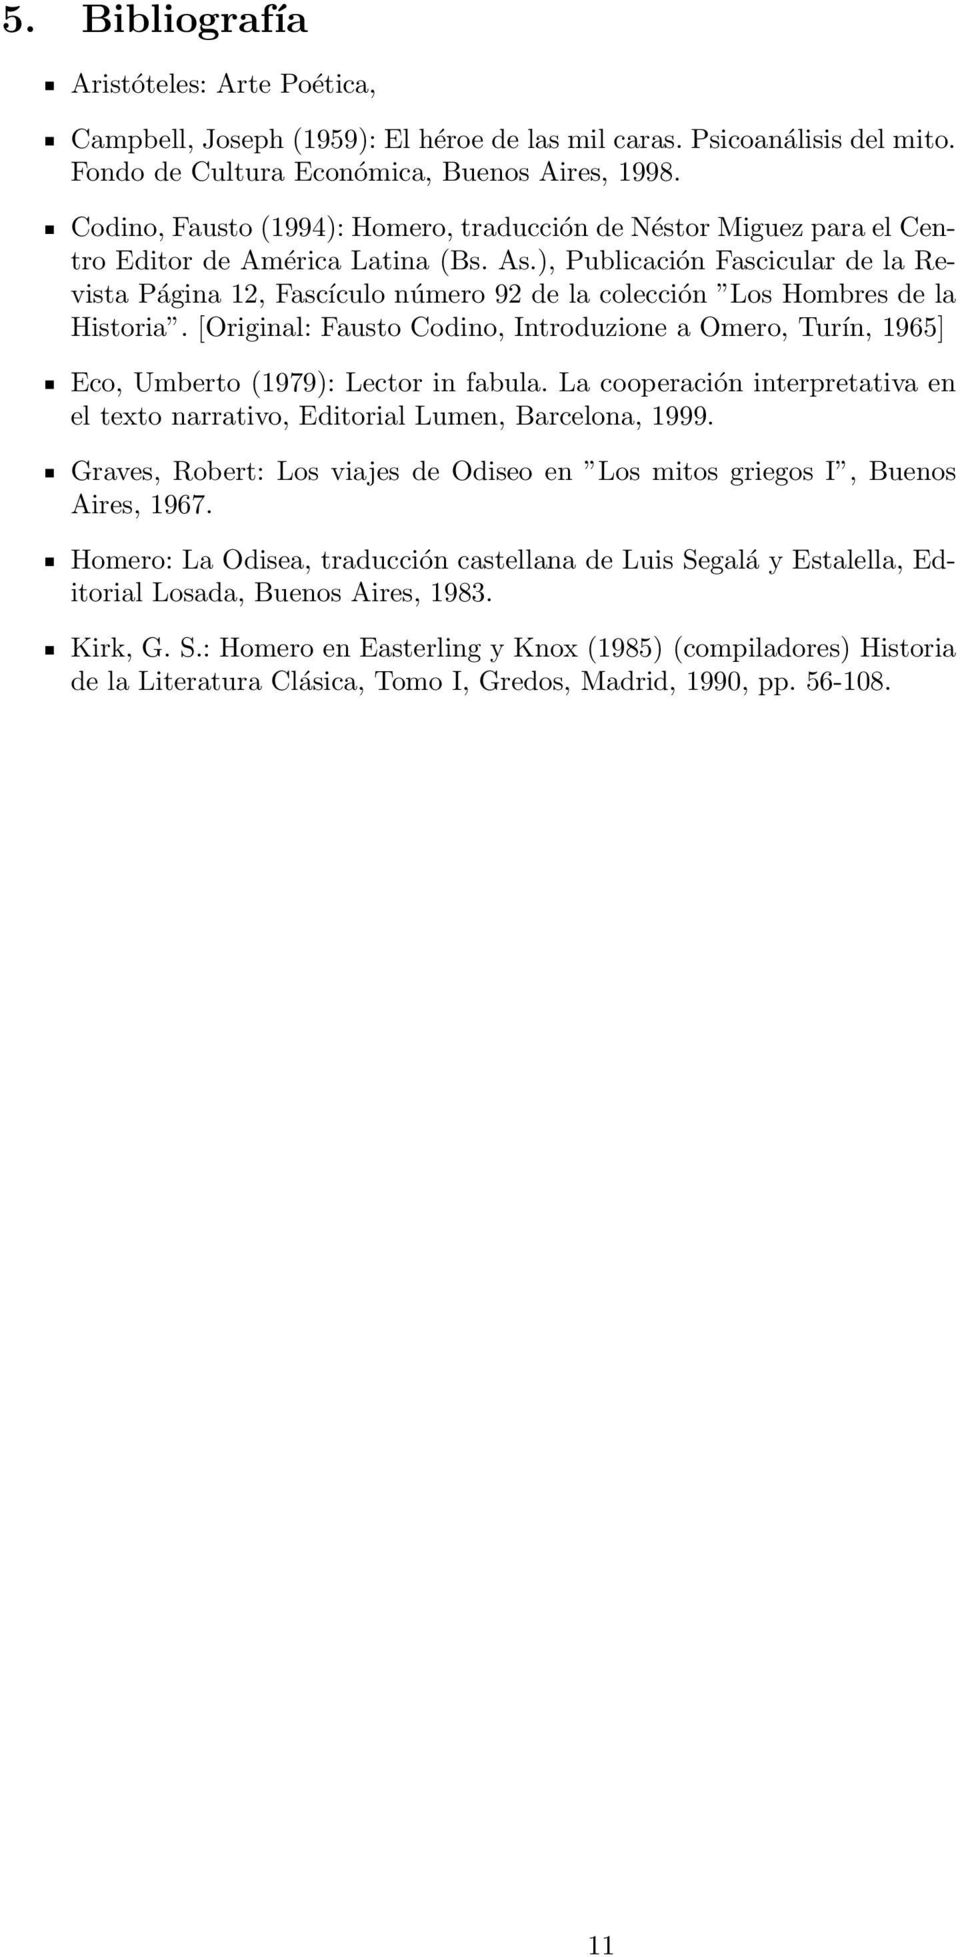 ), Publicación Fascicular de la Revista Página 12, Fascículo número 92 de la colección Los Hombres de la Historia.